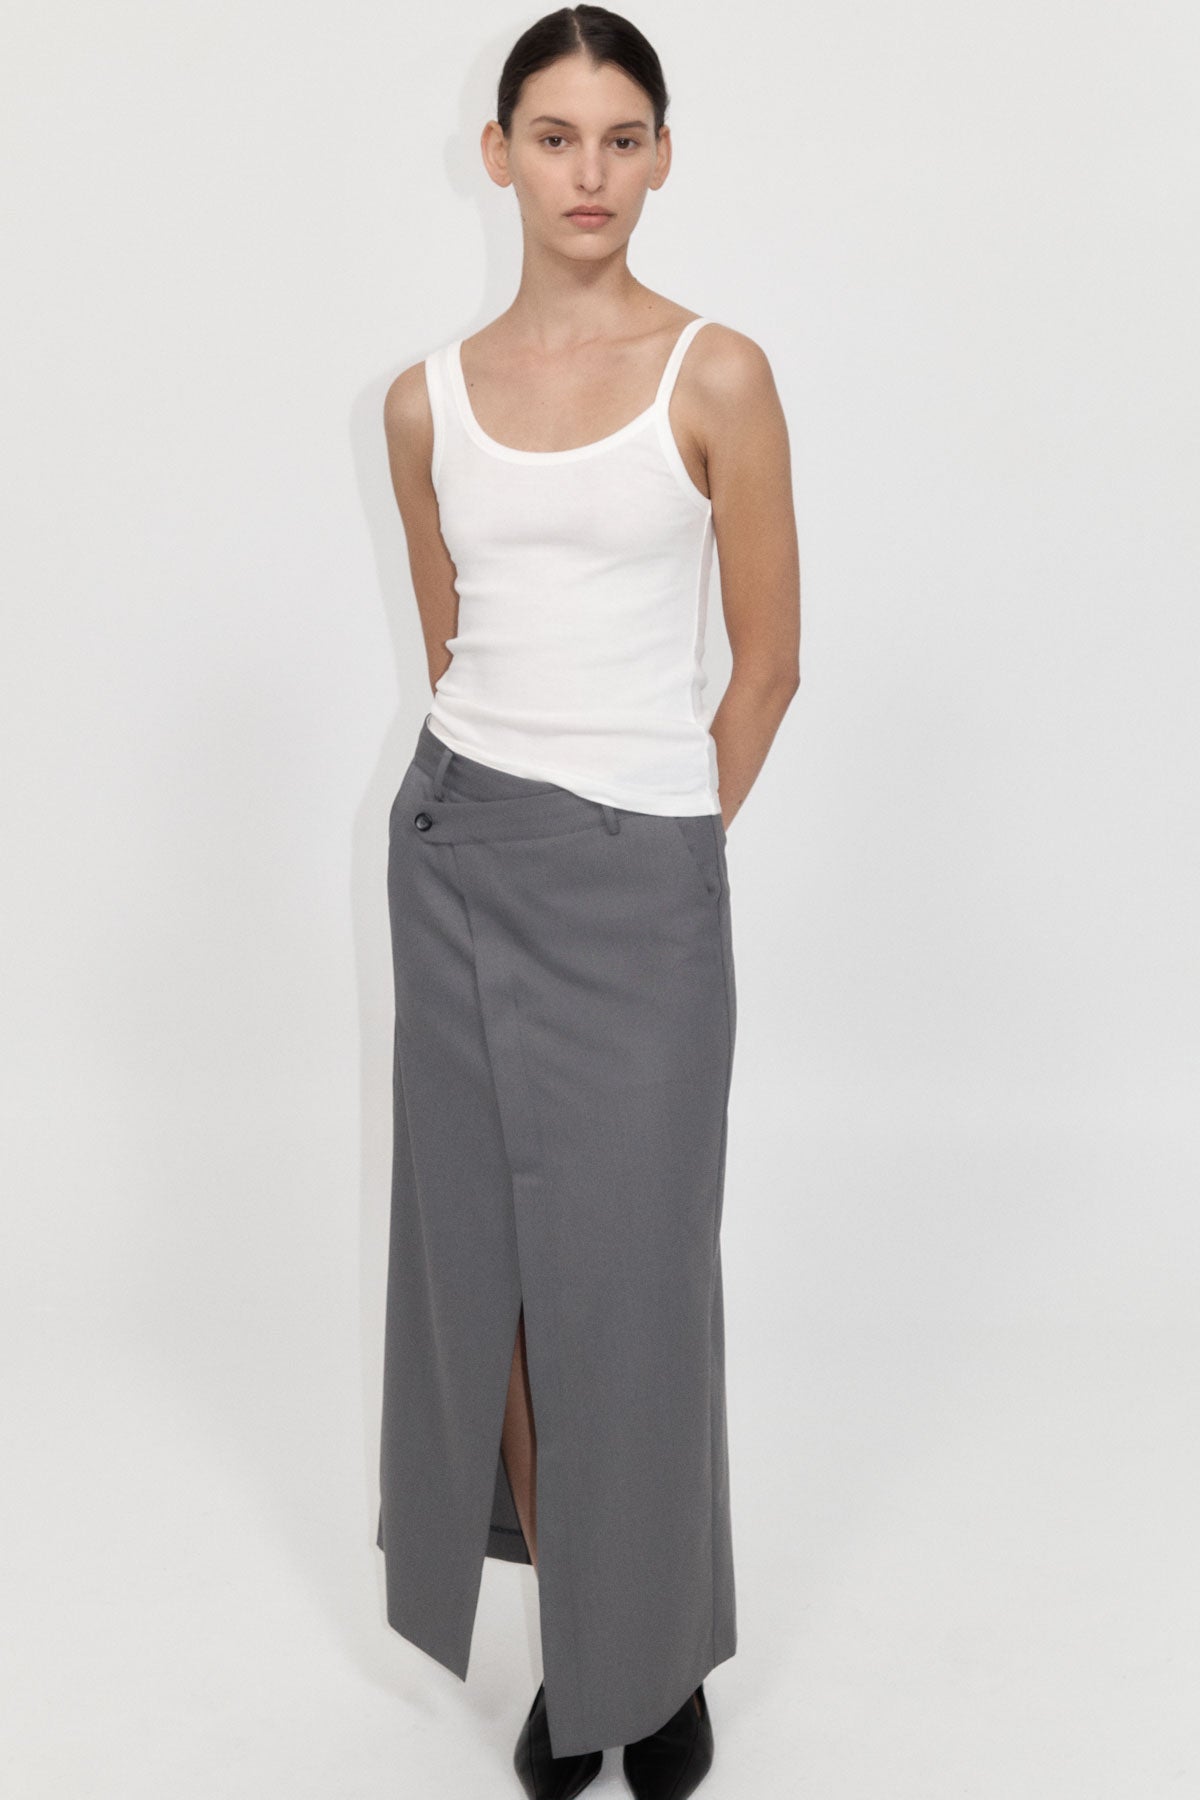 Deconstructed Waist Maxi Skirt - Pewter Grey